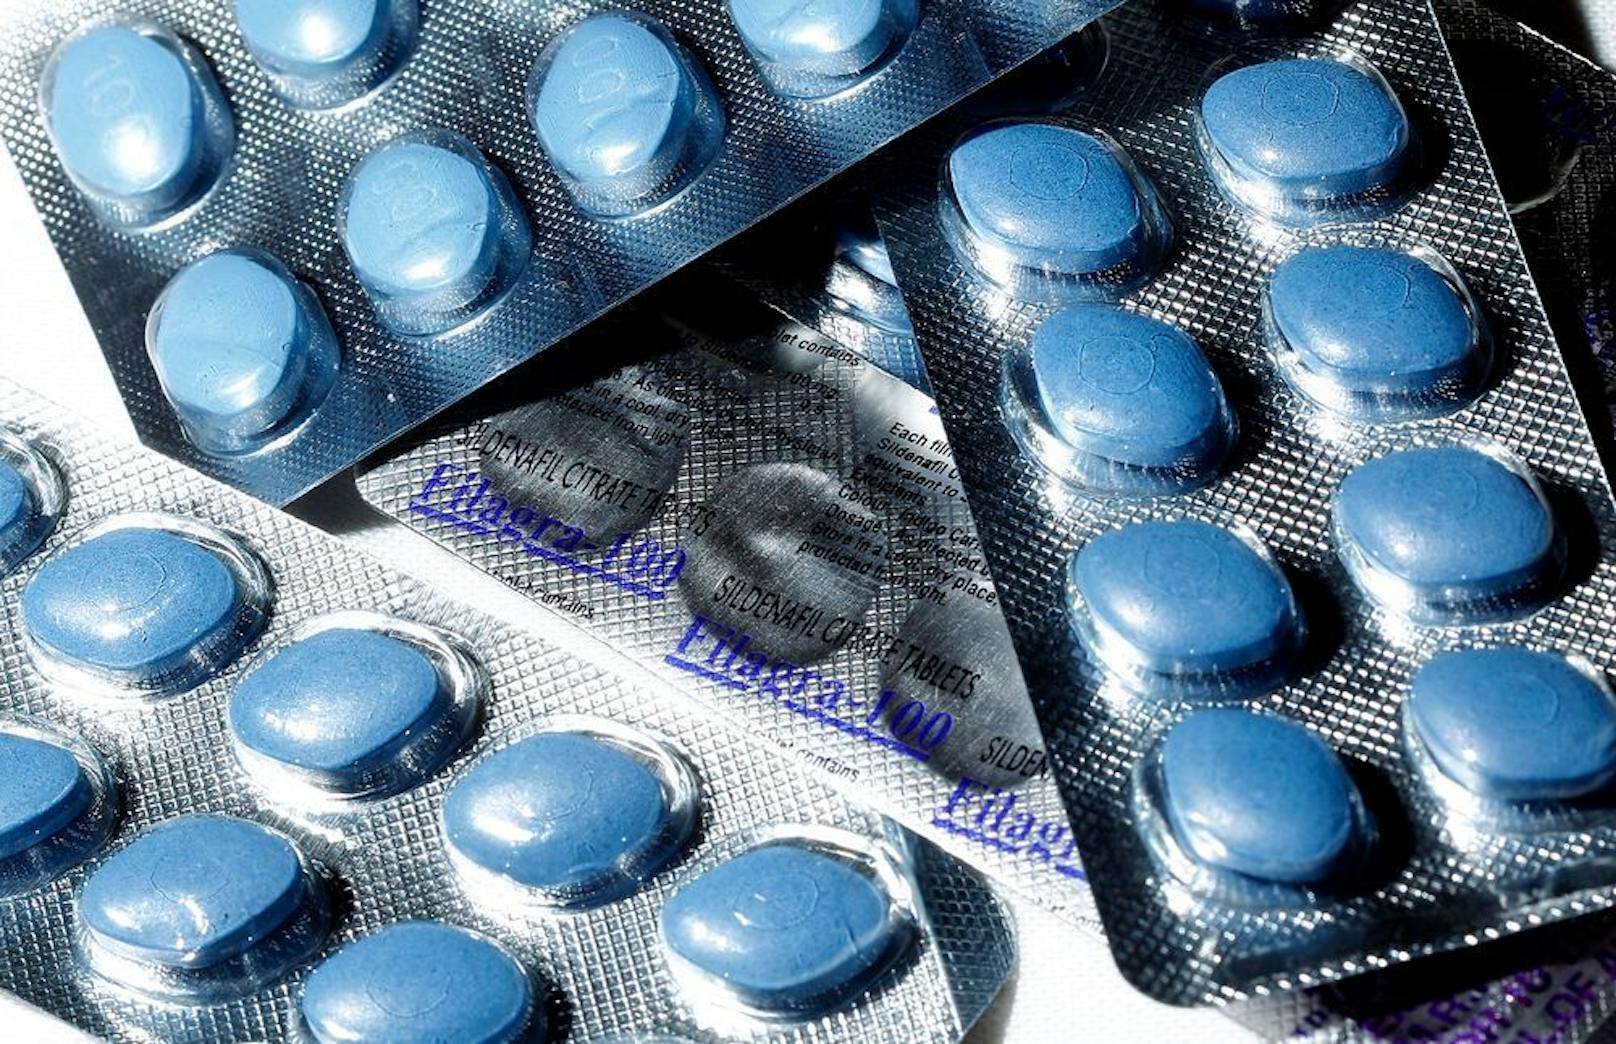 Blau und rauteförmig: Viagra-Tablette